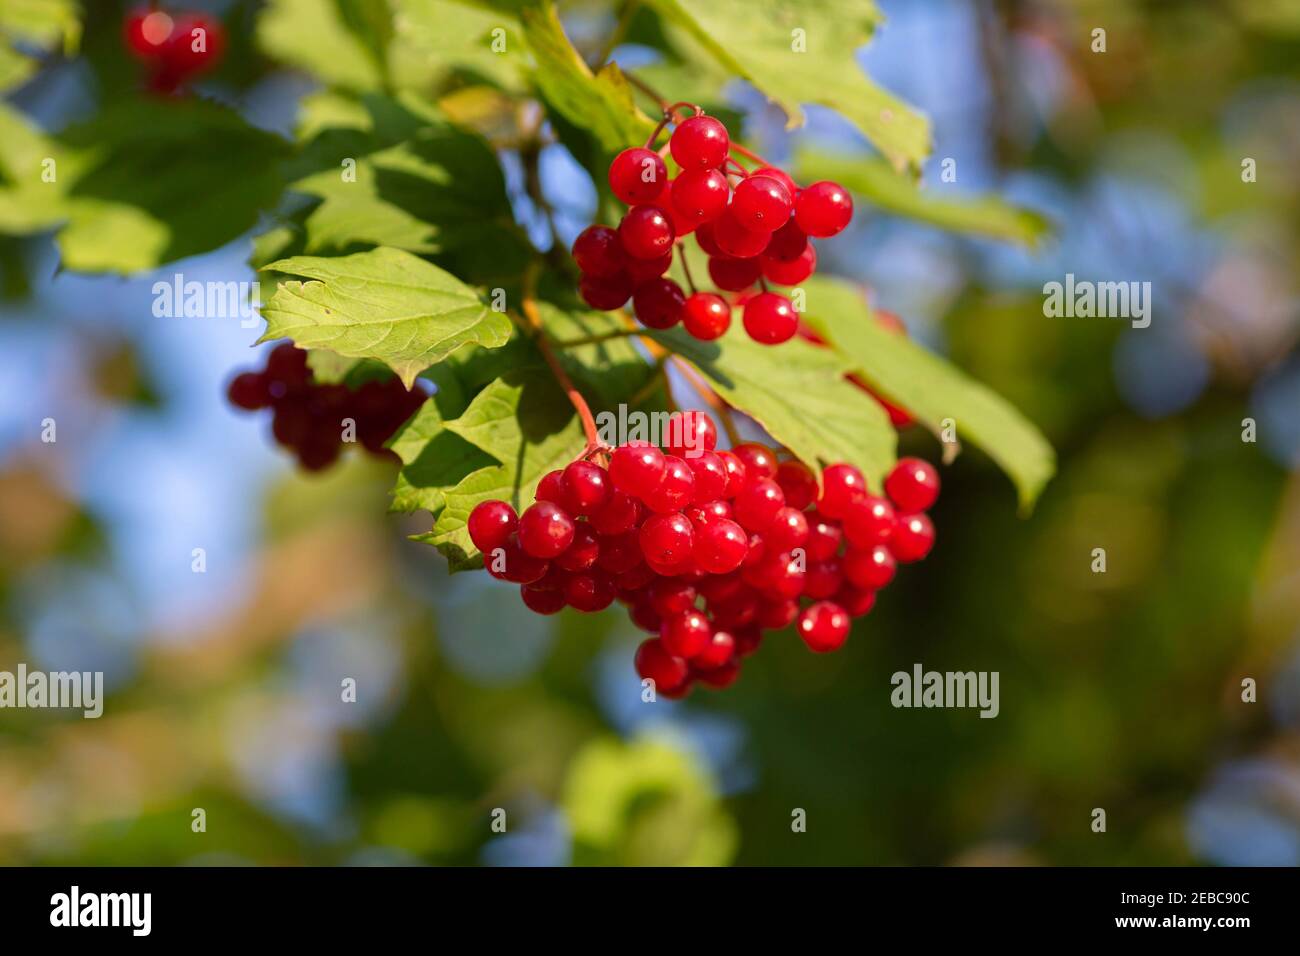 Rote viburnum Zweig im Garten. Viburnum viburnum opulus Beeren und Blätter im Herbst. Ein Strauß roter Viburnum-Beeren auf einem Zweig. Stockfoto